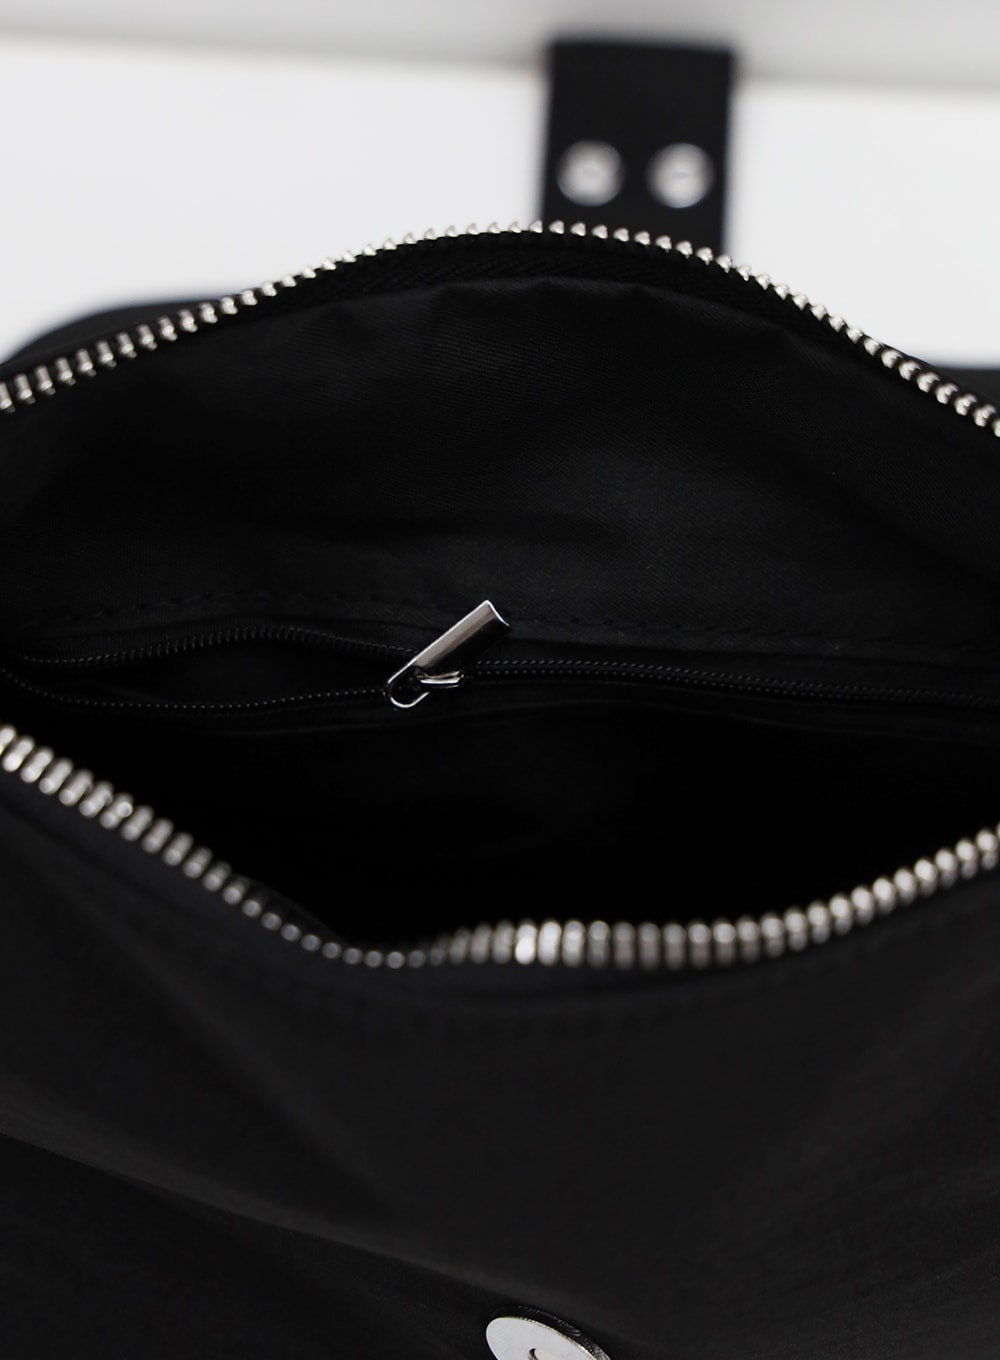 Side Pocketed Belted Bag BU12